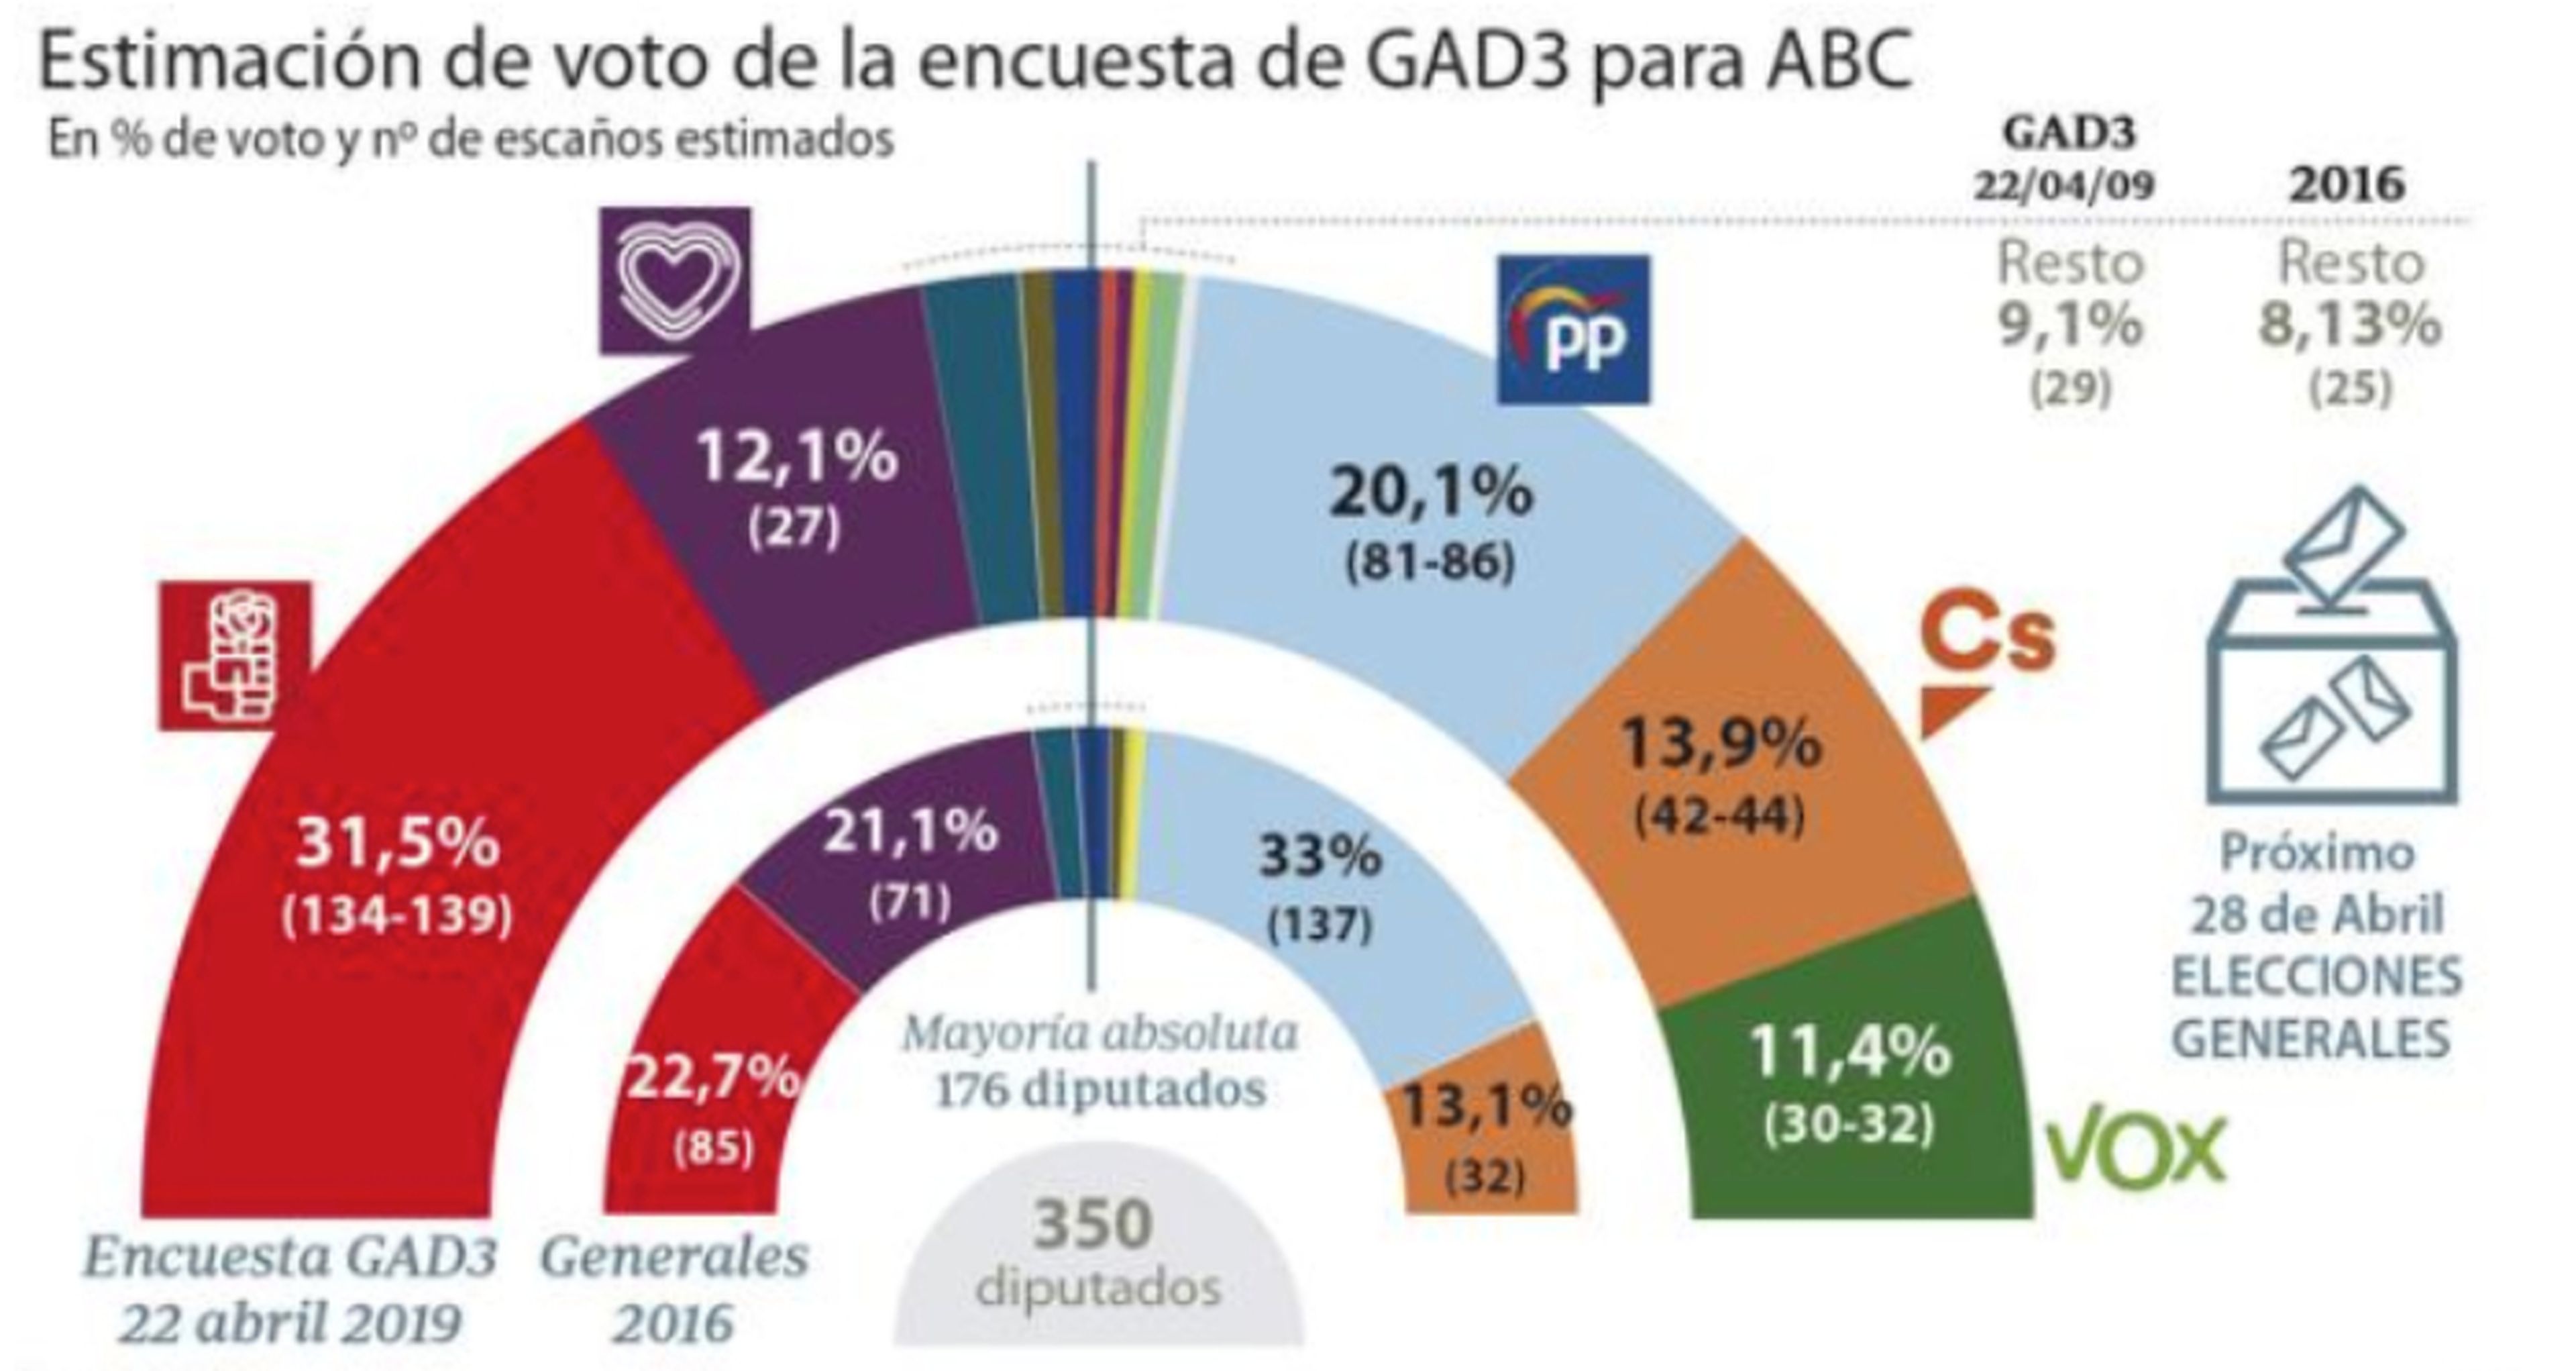 Encuesta de GAD3 para las elecciones generales del 28 de abril